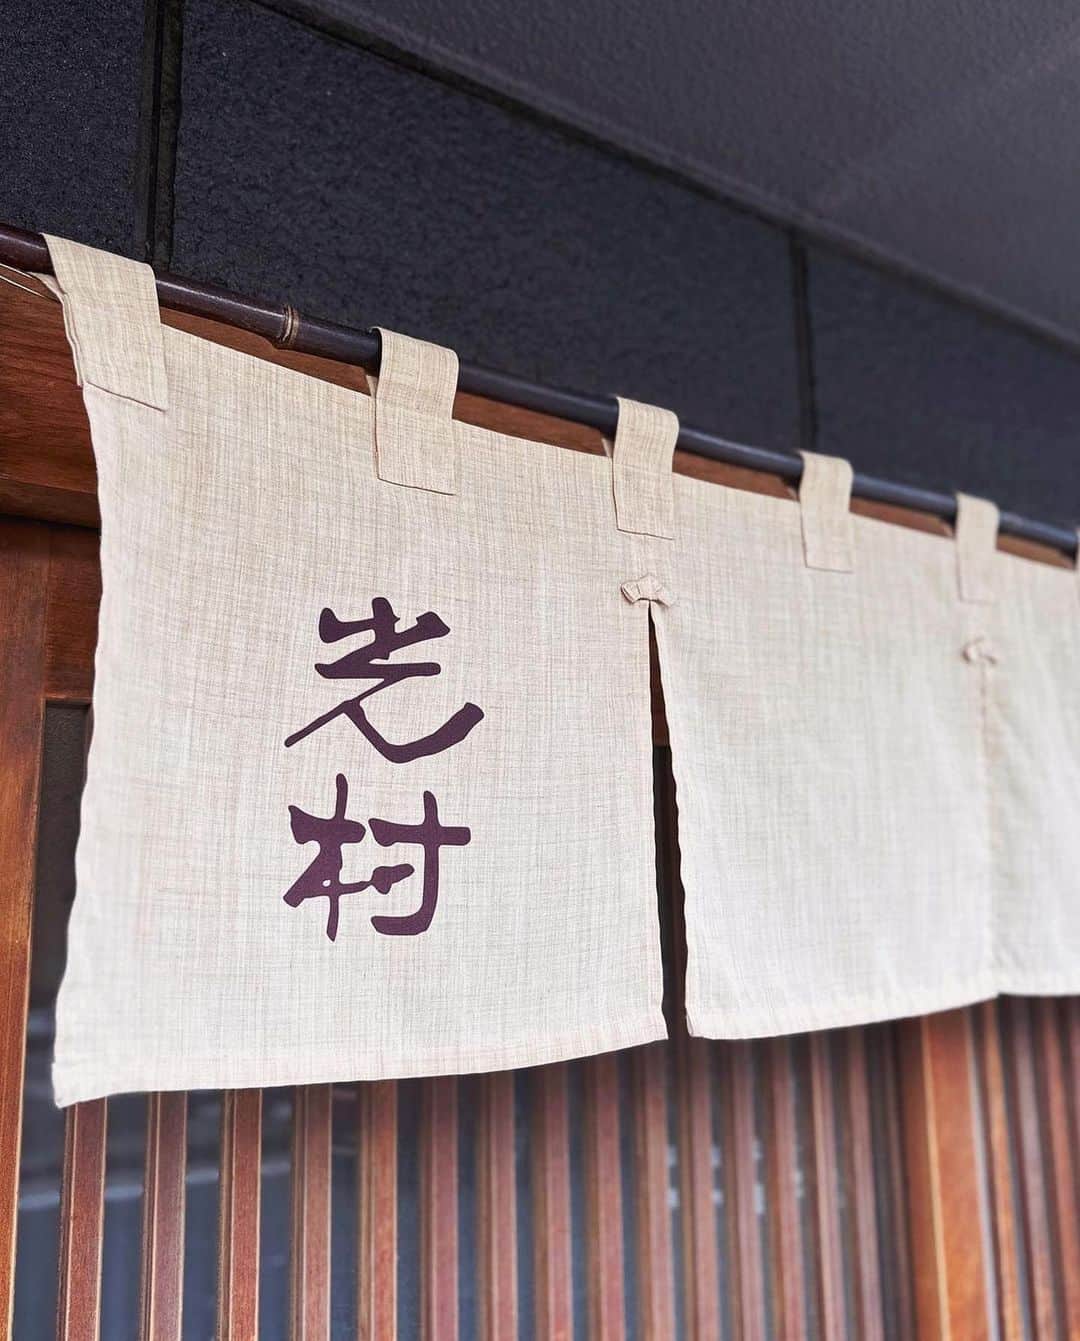 ナゴレコさんのインスタグラム写真 - (ナゴレコInstagram)「📍「天ぷら かき揚げ 光村」 ･････････････････････････････････････････  美味しい天丼、食べるならここで決まり💕  今日は、北区・清水にある「天ぷら かき揚げ 光村」さんをご紹介！ こちらのお店では、天ぷらやかき揚げ丼メニューが楽しめます✨  中でも目をひいたのがこちらの「天丼」🍤💕 濃いめのタレがかかった海老天は、ふっくらとしていて食欲をそそります🔥  丼なのでボリュームももちろん満点！ 味わい深いタレとサクサクの衣は相性もバッチリです💯 お好みでさらにトッピングを追加するのもおすすめ◎  天ぷらやかき揚げが好きなら、このお店は絶対に外せません👌 美味しい天ぷら、かき揚げが食べたくなったらみんなもぜひ「光村」さんに行ってみてね🥢  ┈┈┈┈┈┈┈┈┈┈┈┈┈┈┈┈┈┈┈  🍤名古屋のローカルグルメメディア【ナゴレコ】🍤  名古屋人がレコメンドする本当に美味しい名古屋めし🥢 これさえフォローしておけば、街の流行りがきっとわかる◎ 100名以上の編集部で作り上げる、名古屋エリア最大規模のグルメメディアです📝  他の投稿はこちらから👉 @nagoya_food  ┈┈┈┈┈┈┈┈┈┈┈┈┈┈┈┈┈┈┈  素敵な投稿にタグ付けしていただきありがとうございます✨  #ナゴレコ で、あなたの投稿をリポスト！ webサイト「ナゴレコ」もチェックしてね👀 ･････････････････････････････････････････  ☞ photo by （ @nagoya_kousuke ）さん  ☆☆☆ ⁡ カウンターから見える料理人のテキパキとした動きっ(; ･`д･´) ⁡ 鮮やかな包丁さばきや、フライパン振り、鮨の握り…オープンキッチンだと別の楽しみもありますよねーっ(థ公థ｡) ⁡ 個人的には調理シーンが大好きなので、居酒屋さんでもカウンター席が大好きっ(๑•̀ㅂ•́)و✧ ⁡ 仲良しのお店では、使われるネタや仕込みシーンを見せてくれるのでっ(; ･`д･´) ⁡ 密かに映えちゃったり…楽しい会話ができたり…最高なのでございますっ(๑•̀ㅂ•́)و✧ ⁡ ⁡ ⁡ ⁡ ⁡ 【 光村 】さん ⁡ かき揚げがあまりにも有名で、連日行列の人気天ぷら屋さんっ(; ･`д･´) ⁡ 開店前の駐車場で待機していると…後から来たご夫婦がこちらを睨みながらダッシュっ(థ公థ｡) ⁡ そんな挑戦的な目つき…やめて下さいっ( ✧Д✧) ｶｯ!!私はウンター席で充分というより、カウンター席狙いなので…焦ってませんっ(థ公థ｡) ⁡ 10人ほど並んだところで、開店15分前の最後尾へっ(; ･`д･´) ⁡ やったー！1番お気に入りのタレかけLIVEが目の前のカウンター席へっ(๑•̀ㅂ•́)و✧ ⁡ ▪️天丼 1500円 ▪️TP 大海老天一尾 800円 ⁡ これまでかき揚げ丼スペシャルしか食べてなかったので、今回は初めて天丼をオーダーっ( ✧Д✧) ｶｯ!! ⁡ 海老が大好きなので一尾追加注文すると…3尾まとめて乗せられるかと大将に確認してくれましたっ(థ公థ｡)ありがとうございますっ(; ･`д･´) ⁡ 出来上がった天ぷらに、次々とタレがかかるシーンっ(థ公థ｡)そそりますよねーっ(థ公థ｡) ⁡ あ、海老3尾だ！俺のだ！っと、心はいたいけな少年のようになりますっ( ✧Д✧) ｶｯ!! ⁡ いやこの海老…想像以上にぶりぶりで大きいサイズですっ(; ･`д･´) ⁡ 衣は薄くパリッと揚がってるので、リアルサイズでもかなりの大きさでしたっ(๑‾᷆д‾᷇๑)ｷﾘｯ✧ ⁡ ぎゃーーーーーーーっ( ✧Д✧) ｶｯ!!さすが光村さんの天ぷら、激しく激しく美味しくて感激っ(; ･`д･´) ⁡ 甘さ控えめの上品なタレが、おっさんにはどストライクですっ(๑•̀ㅂ•́)و✧ ⁡ 初めての天丼…これ、海老欲を満たすには最高ですっ( ✧Д✧) ｶｯ!!ご馳走様でした！ ⁡ ☆☆☆☆☆☆☆☆☆☆☆☆☆☆☆☆☆☆☆☆☆ ⁡ ▪️光村 ▪️名古屋市北区清水3-19-18 ▪️052-911-3512 ▪️11:00〜14:00、17:00〜21:00 ▪️第1.3火曜及び水曜定休 ▪️駐車場有り ⁡ ◉ お店の都合により変更があるかもしれません。行かれる場合は定休日や営業時間の再確認を！ ⁡ ☆☆☆☆☆☆☆☆☆☆☆☆☆☆☆☆☆☆☆☆☆ ⁡」10月24日 20時30分 - nagoya_food